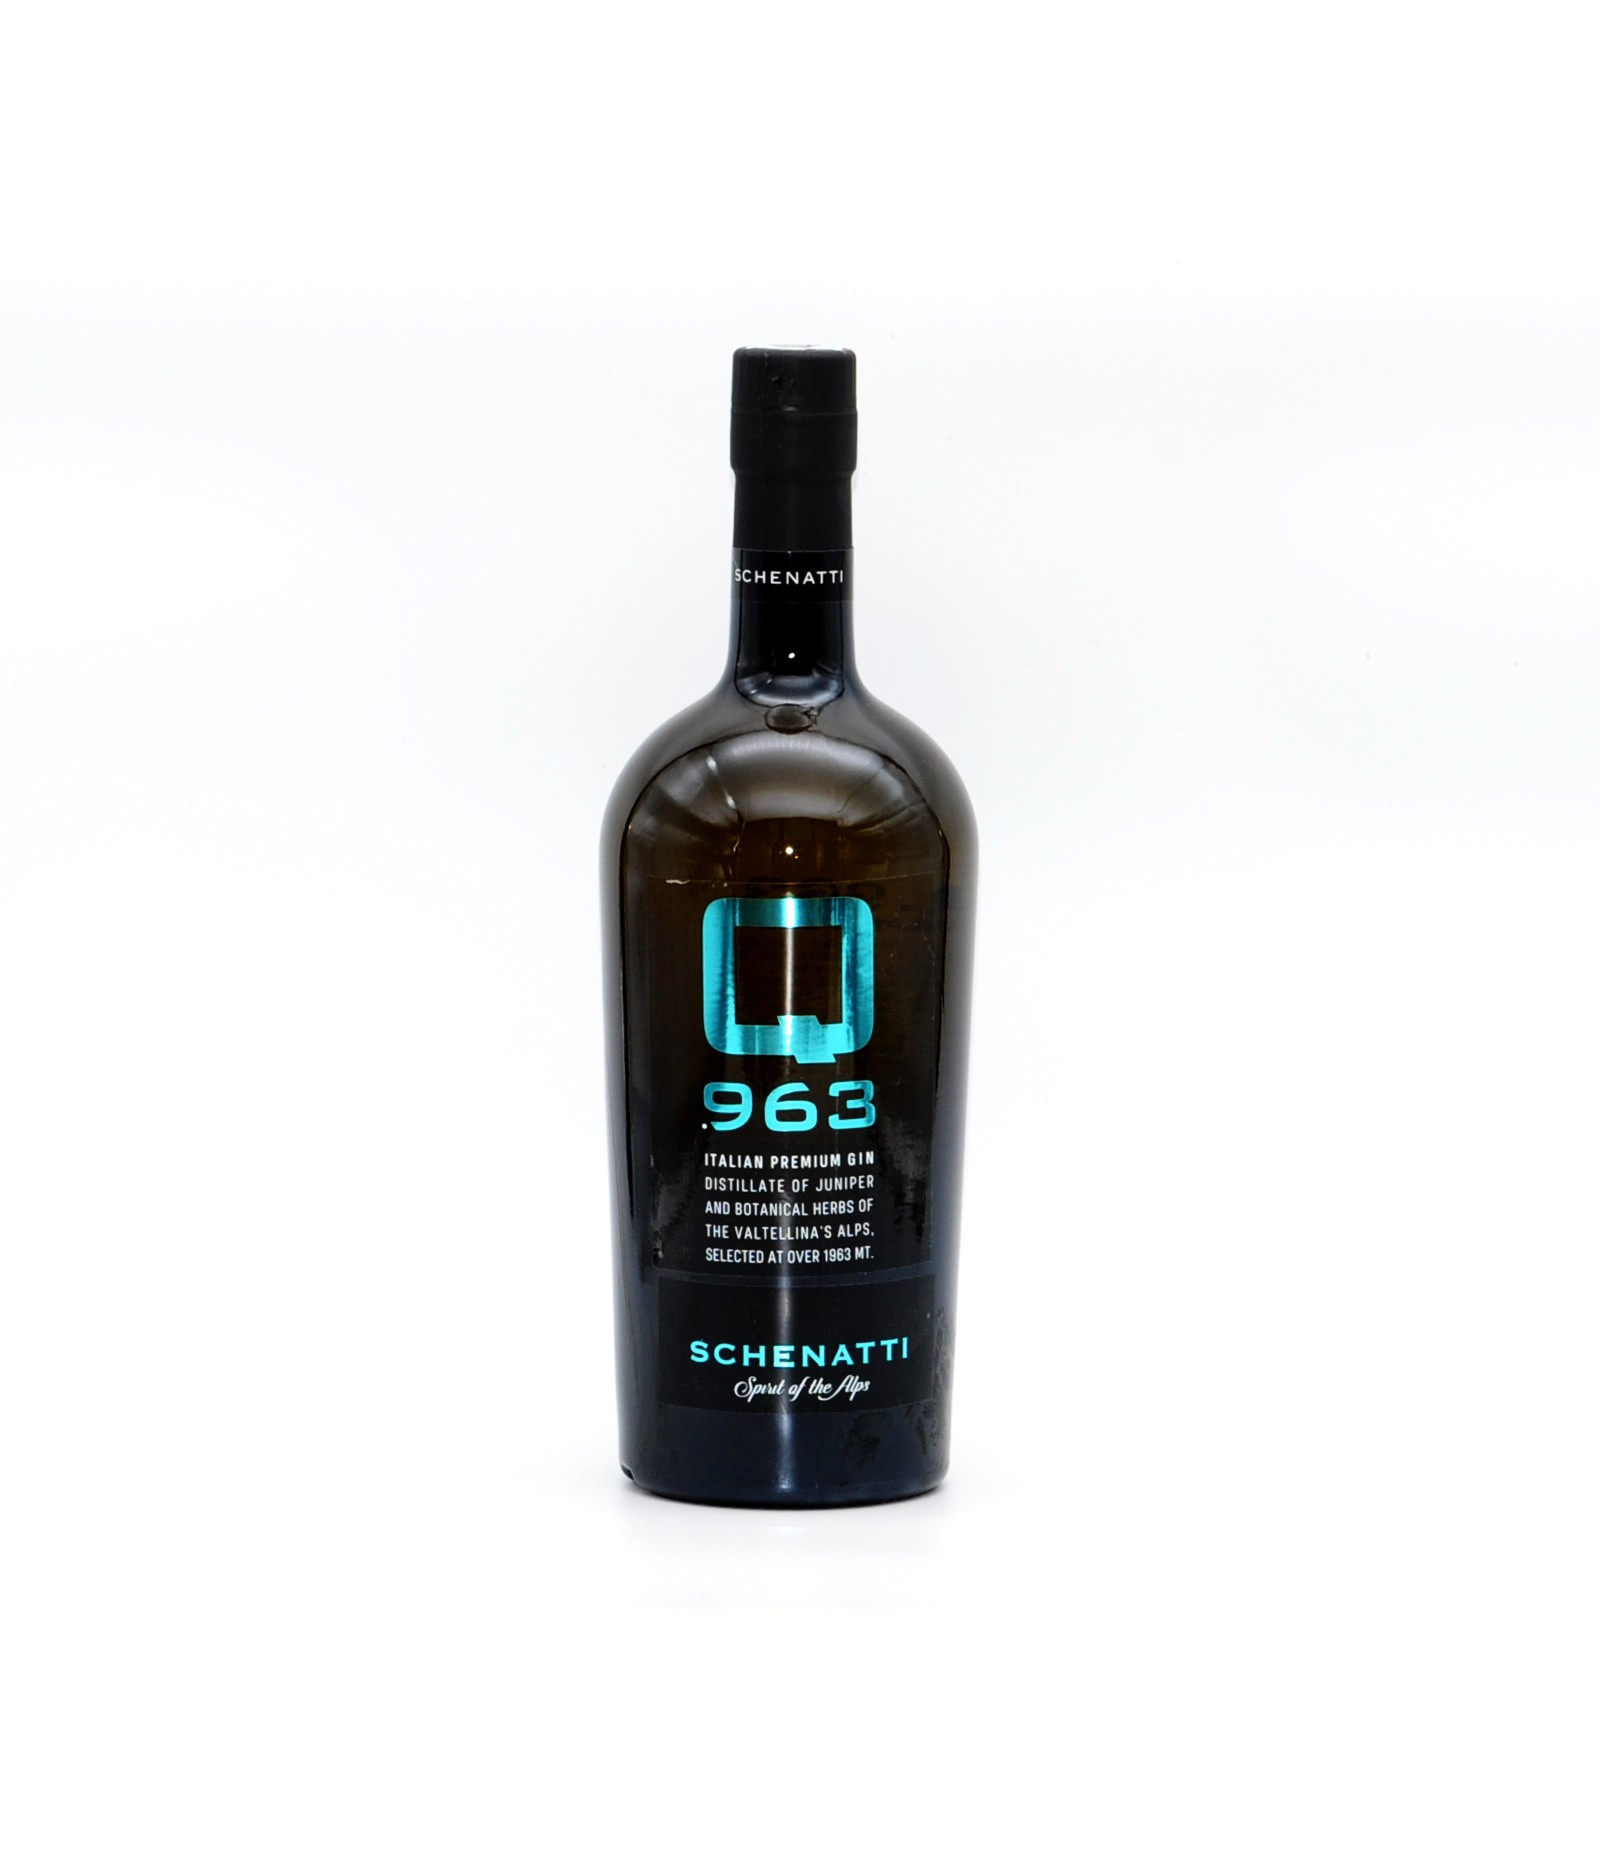 Premium Dry Gin in Made Q.963 Valtellina 